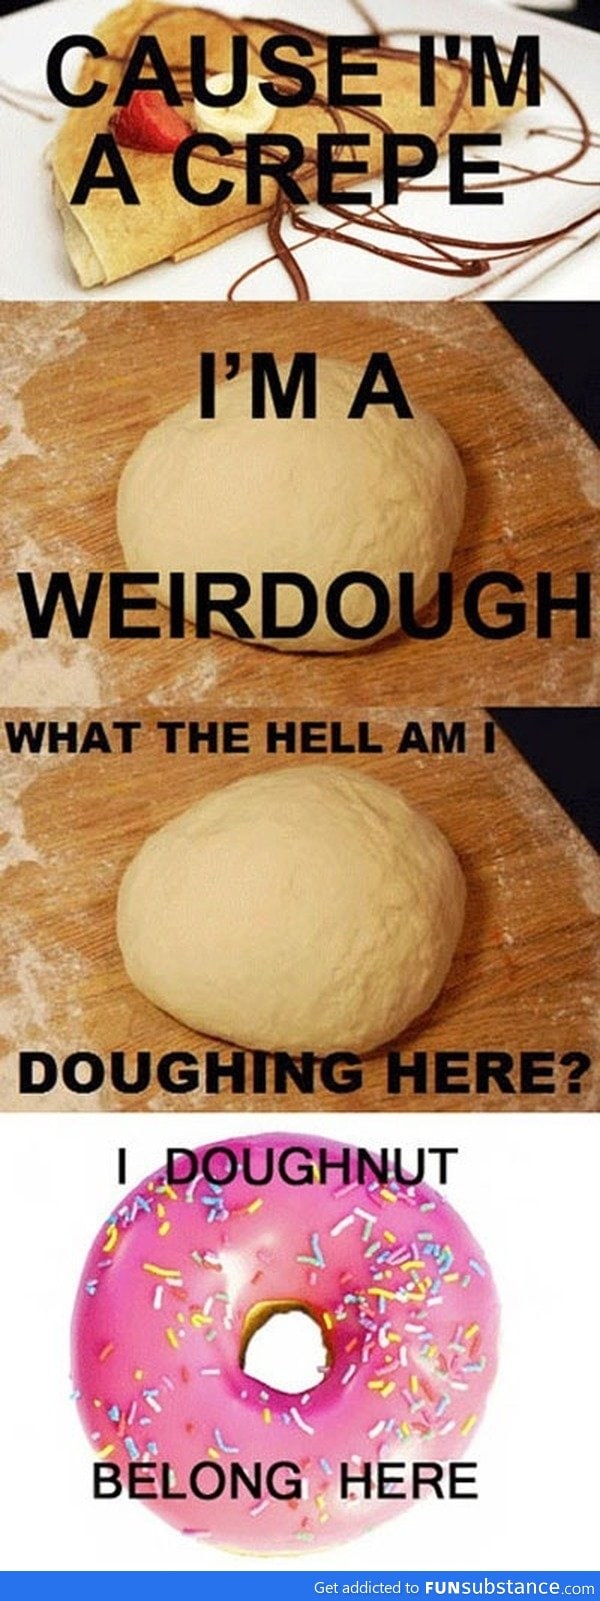 I doughnut know puns